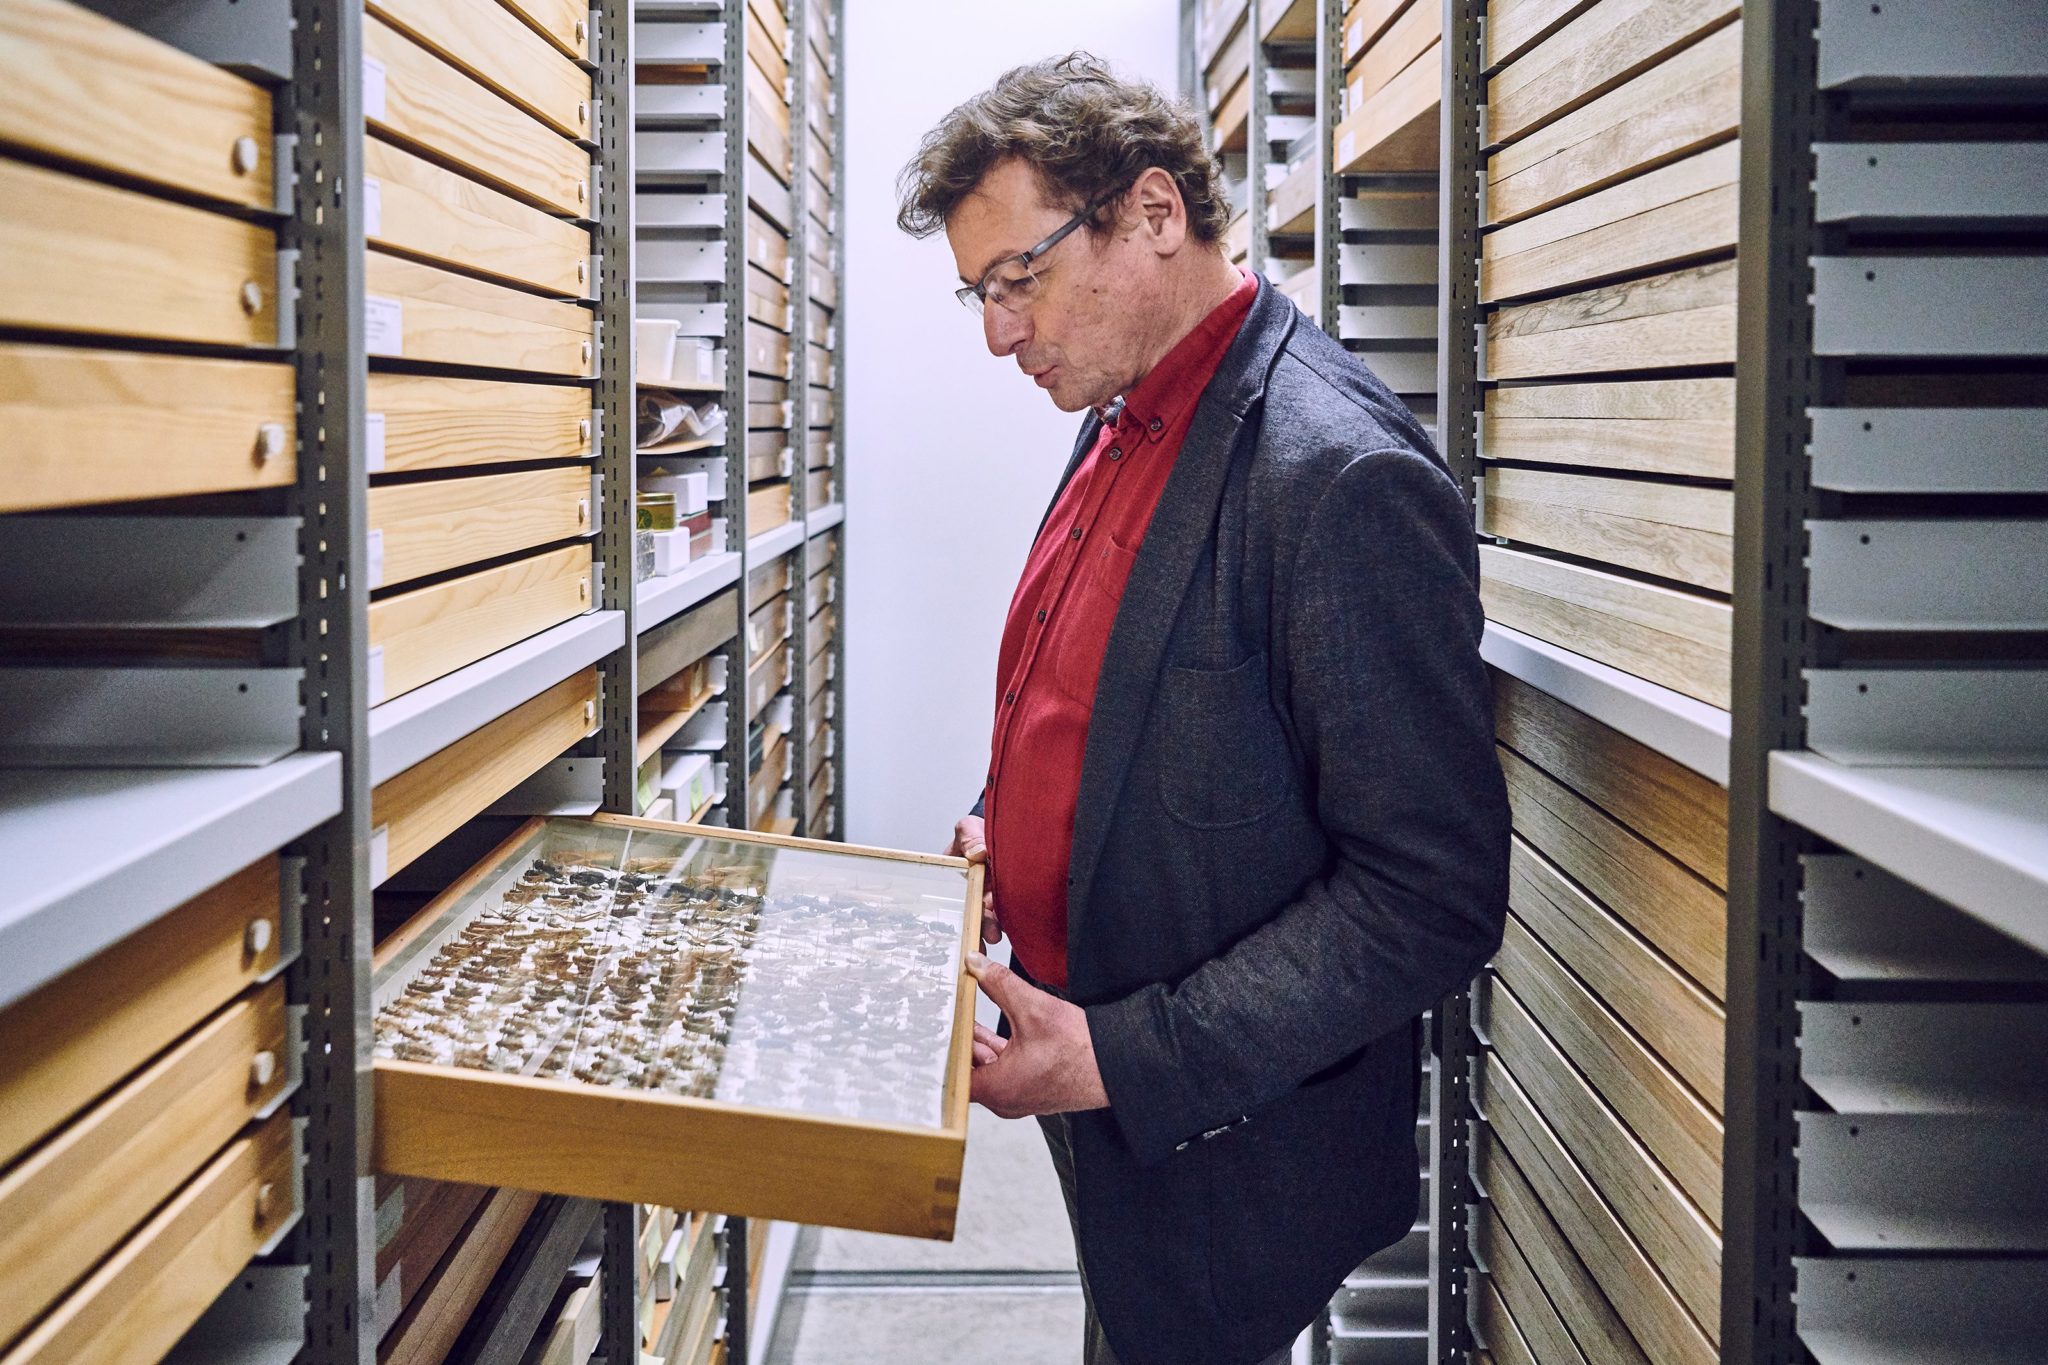 Christian Kropf, der Leiter der Abteilung Wirbellose am Naturhistorischen Museum Bern, betrachtet im Kellerarchiv einen Glaskasten mit einer Sammlung verschiedener Heuschrecken.